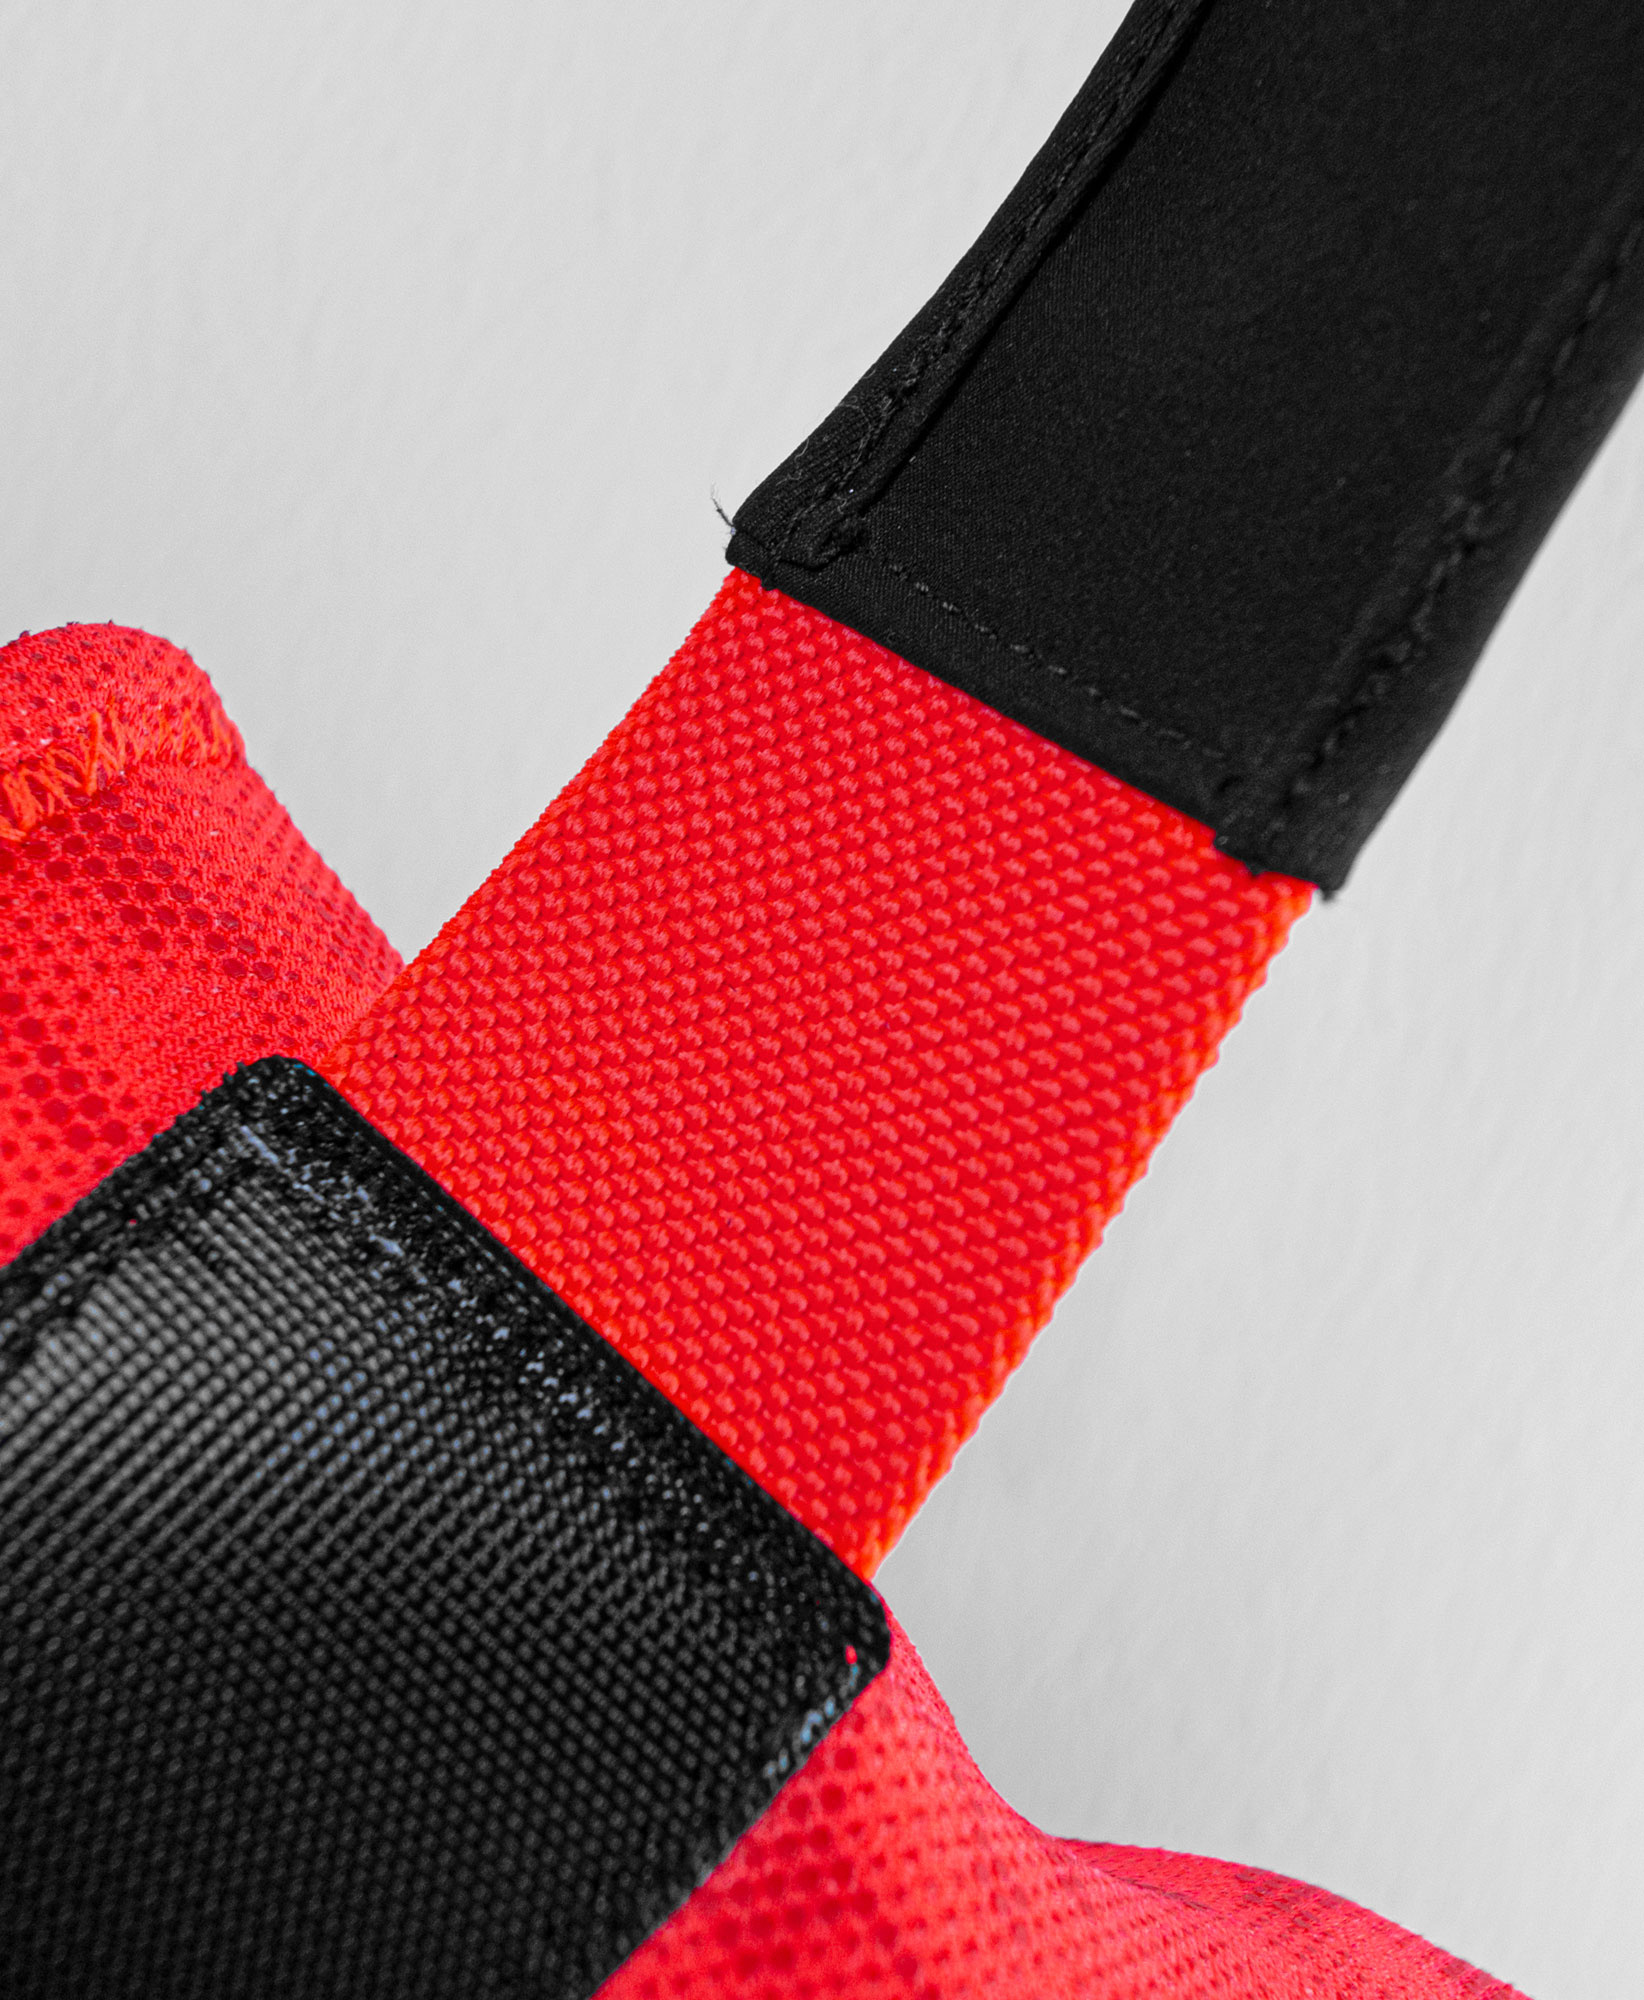 Reusch, World Cup Warrior Neo guanti da sci uomo Black / Fluo Red nero,  rosso